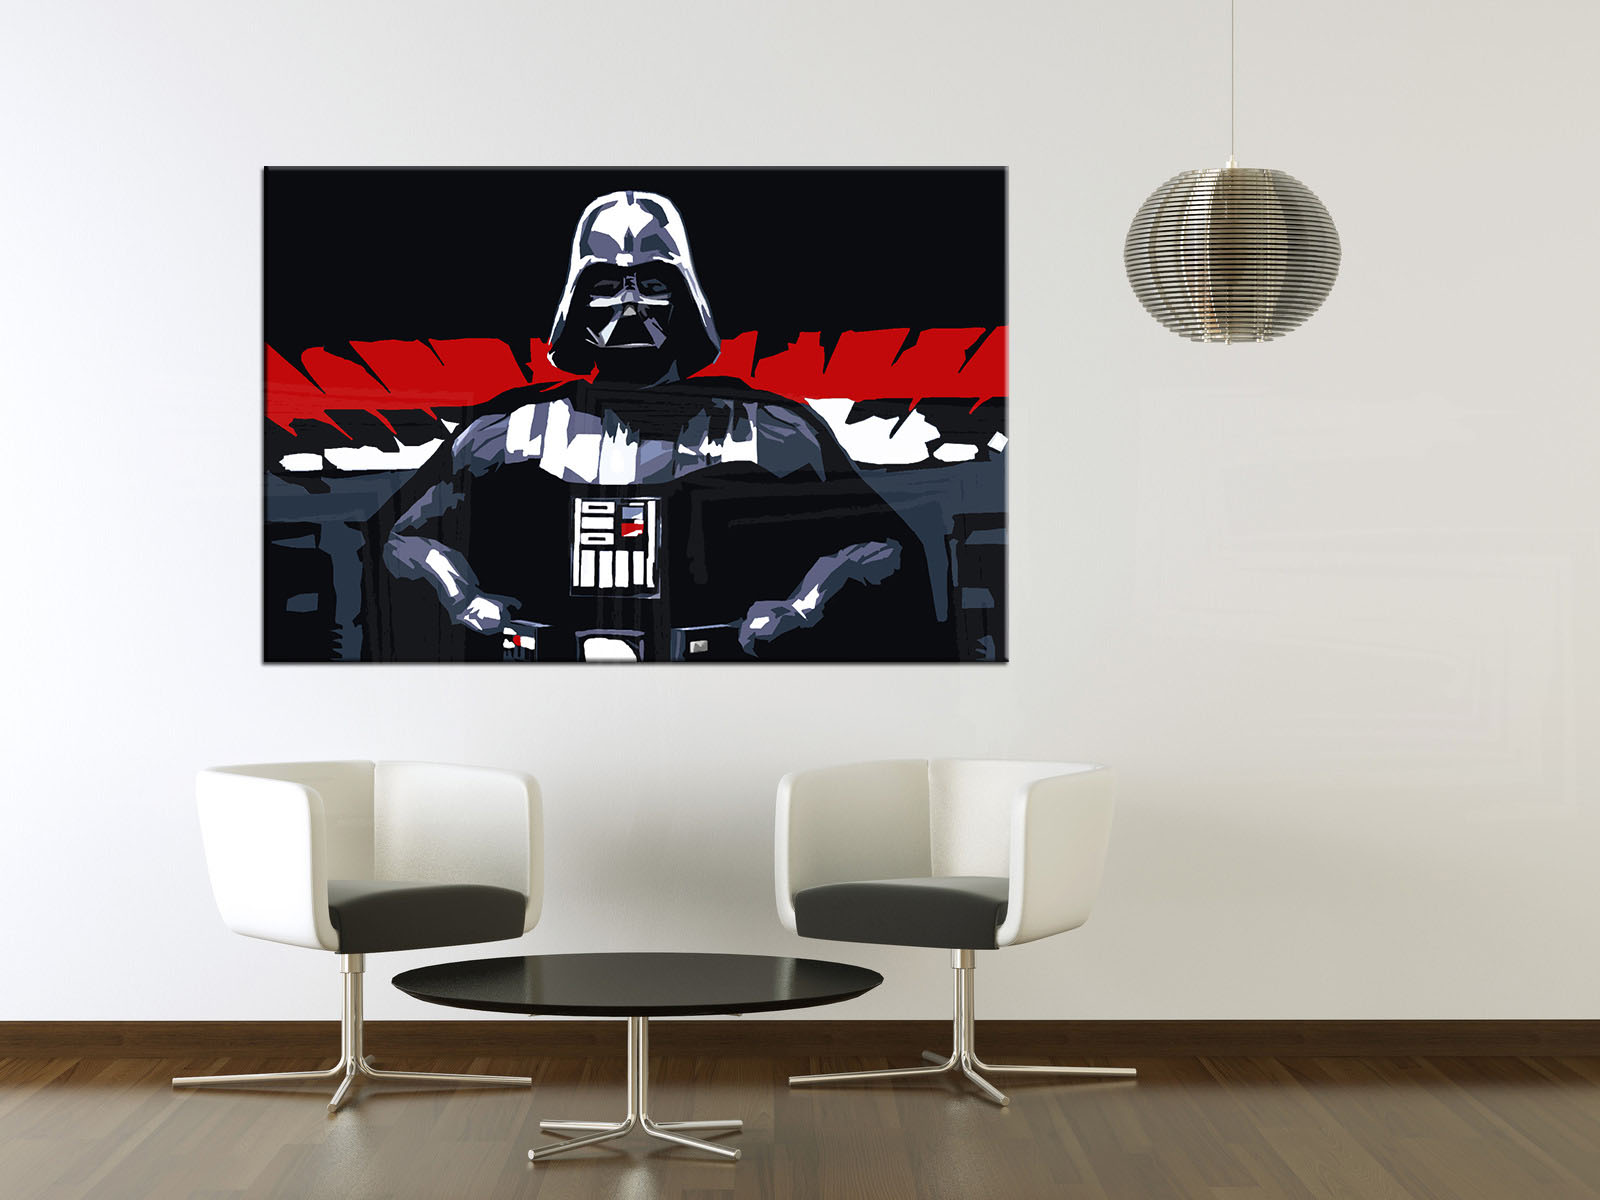 Malovaný POP ART obraz na stěnu STAR WARS - Darth Vader